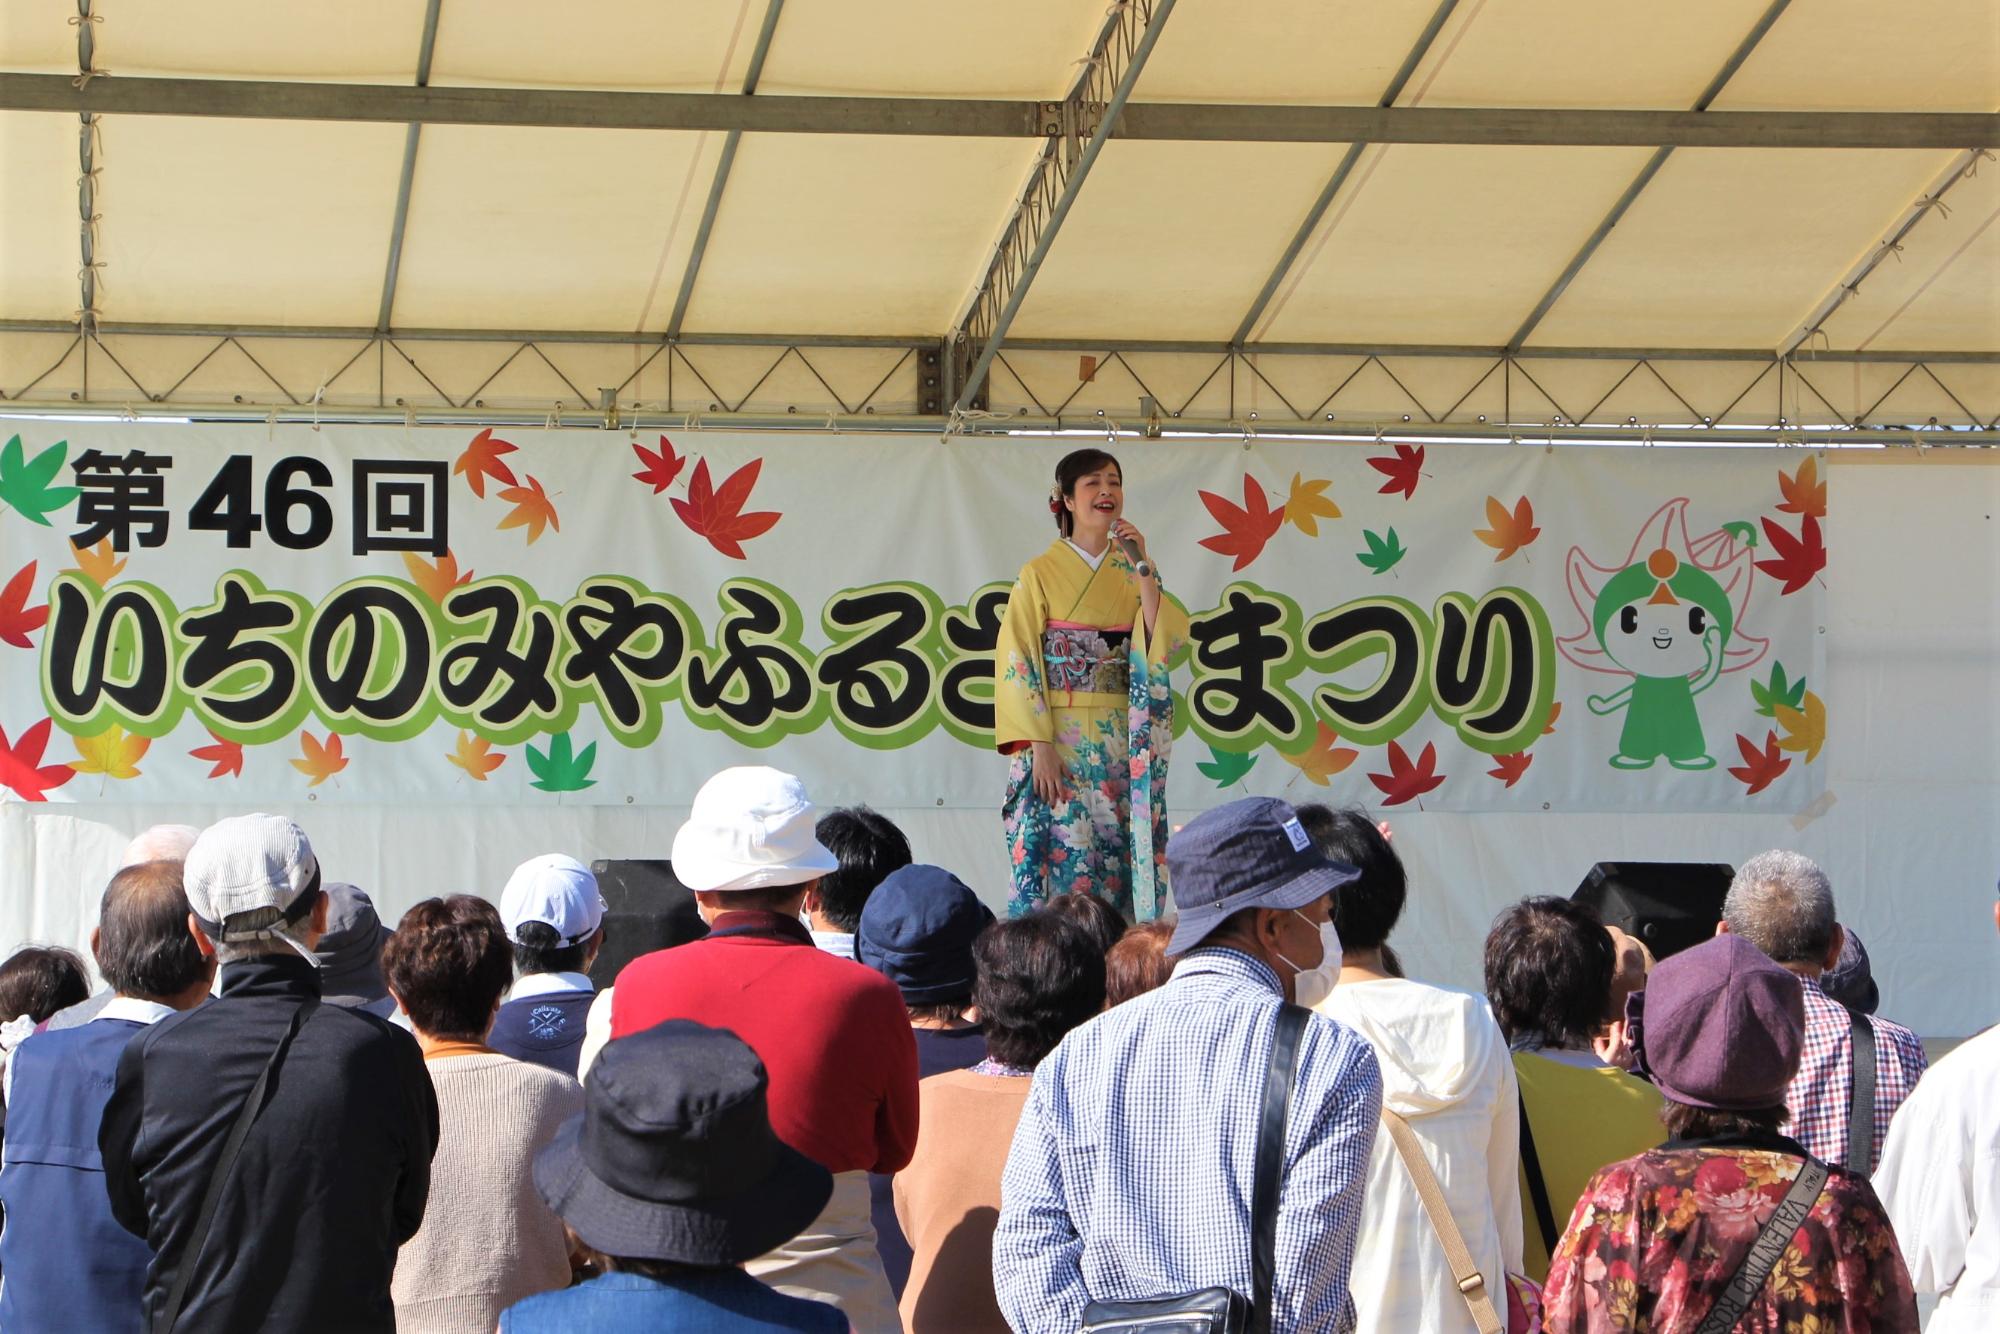 観光大使の瀬口侑希さんの歌声にステージ前に集まった来場者が聞き入っている写真